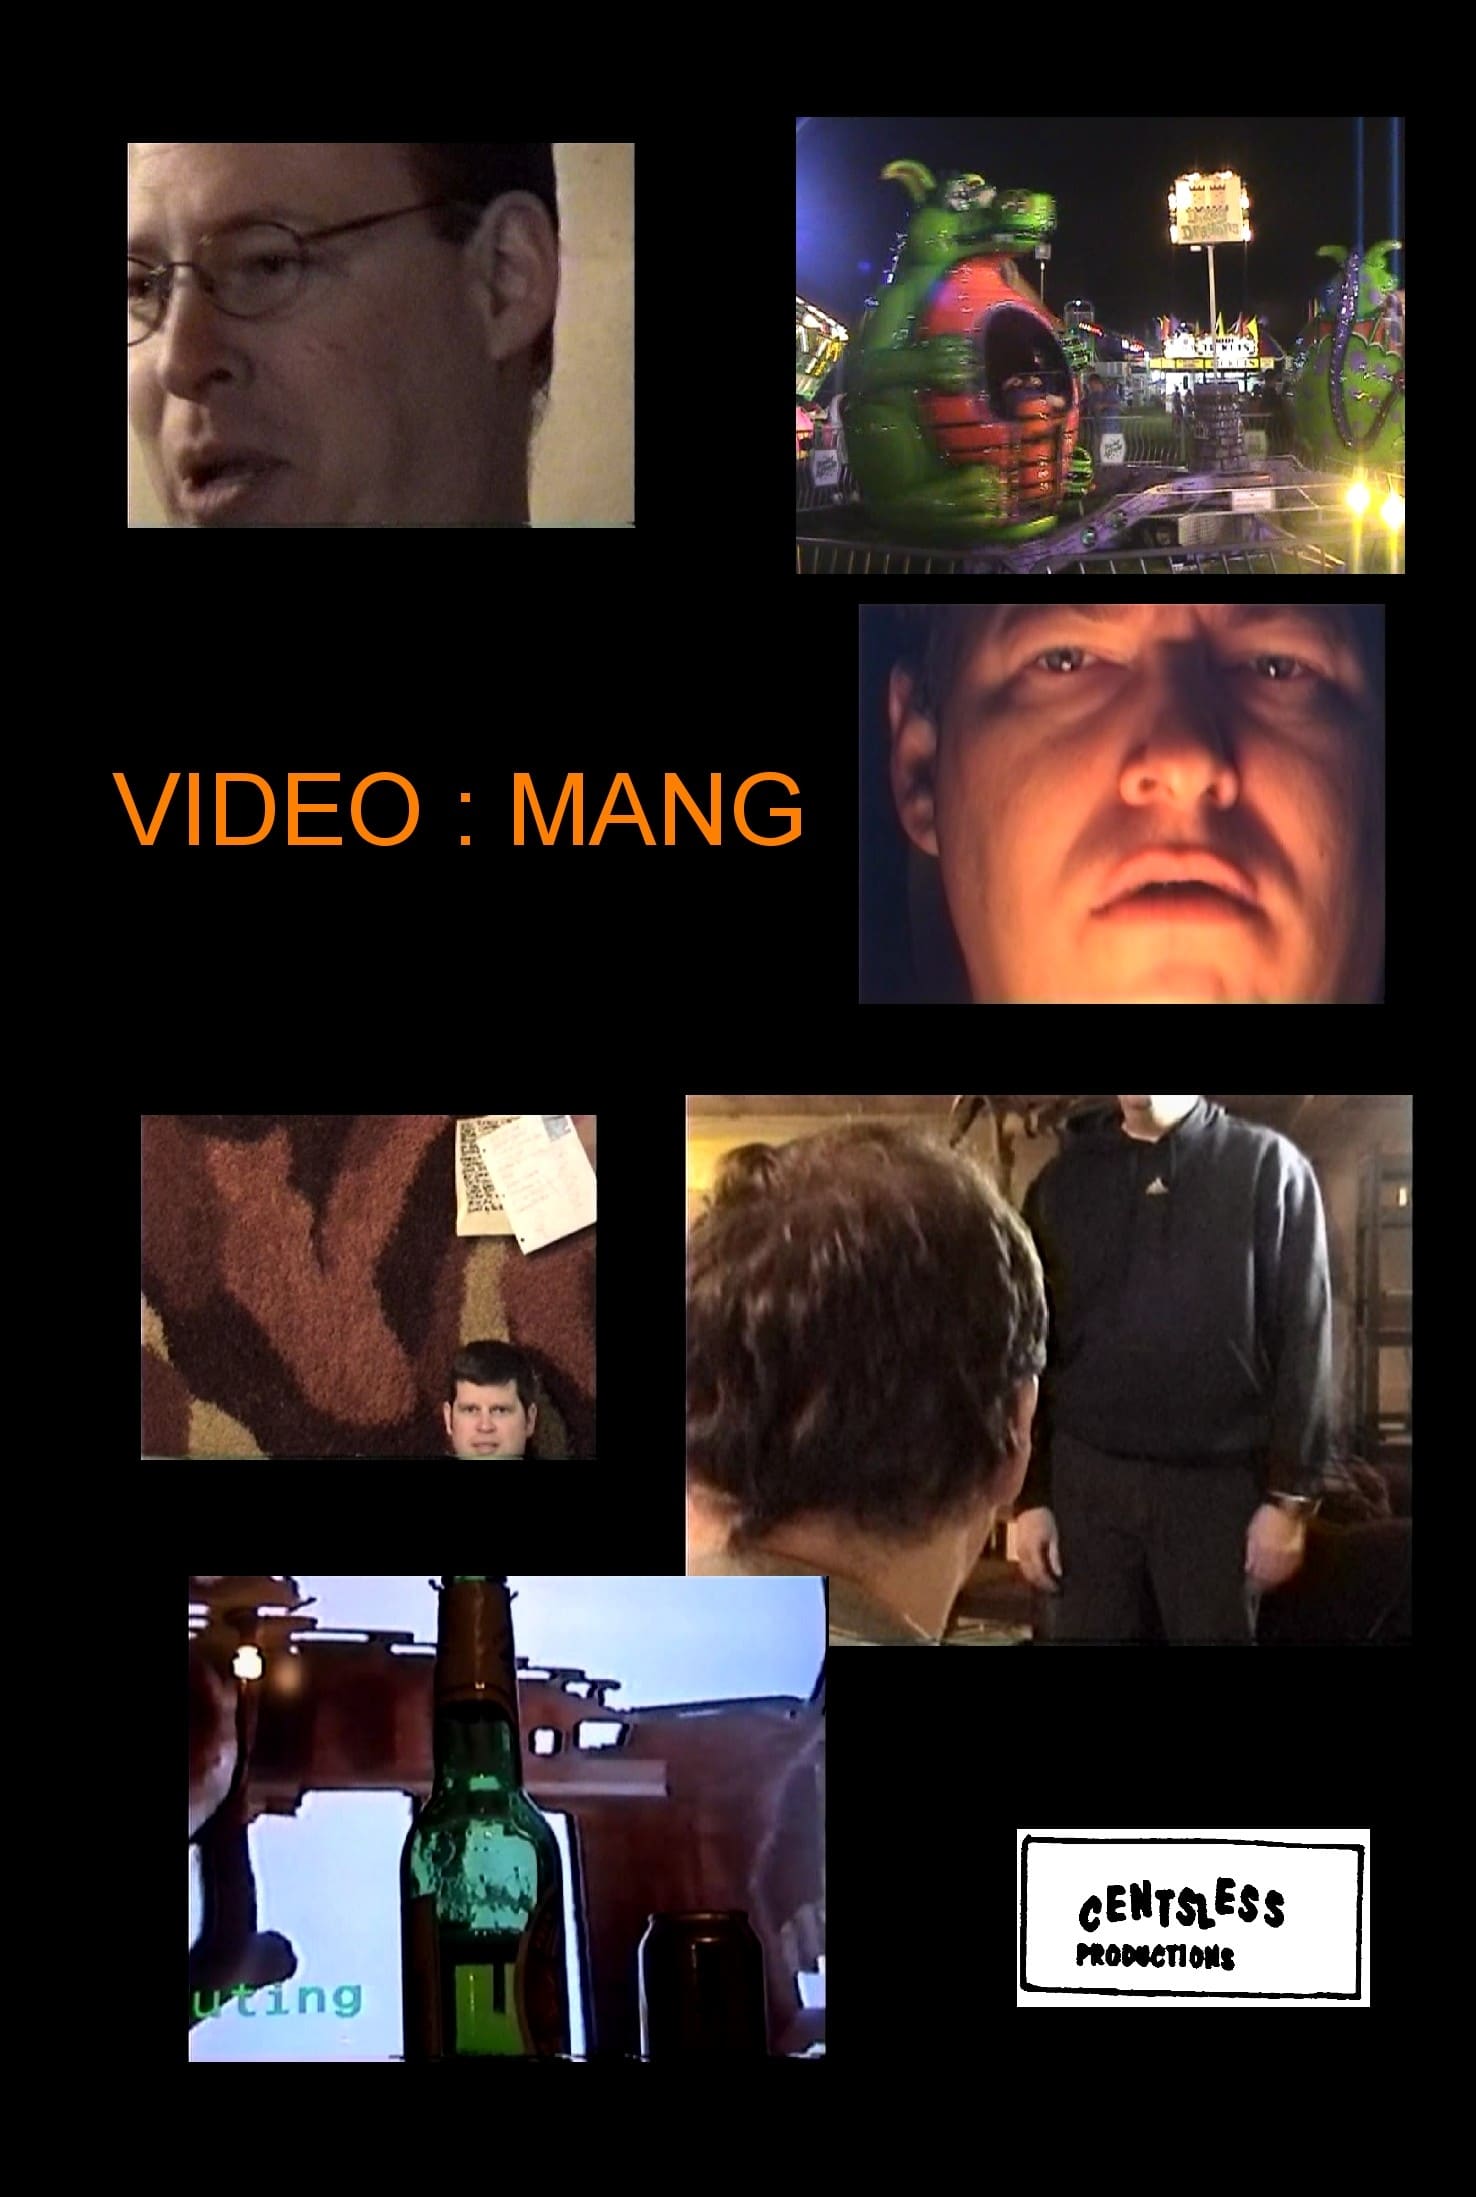 Mang - Video: Mang